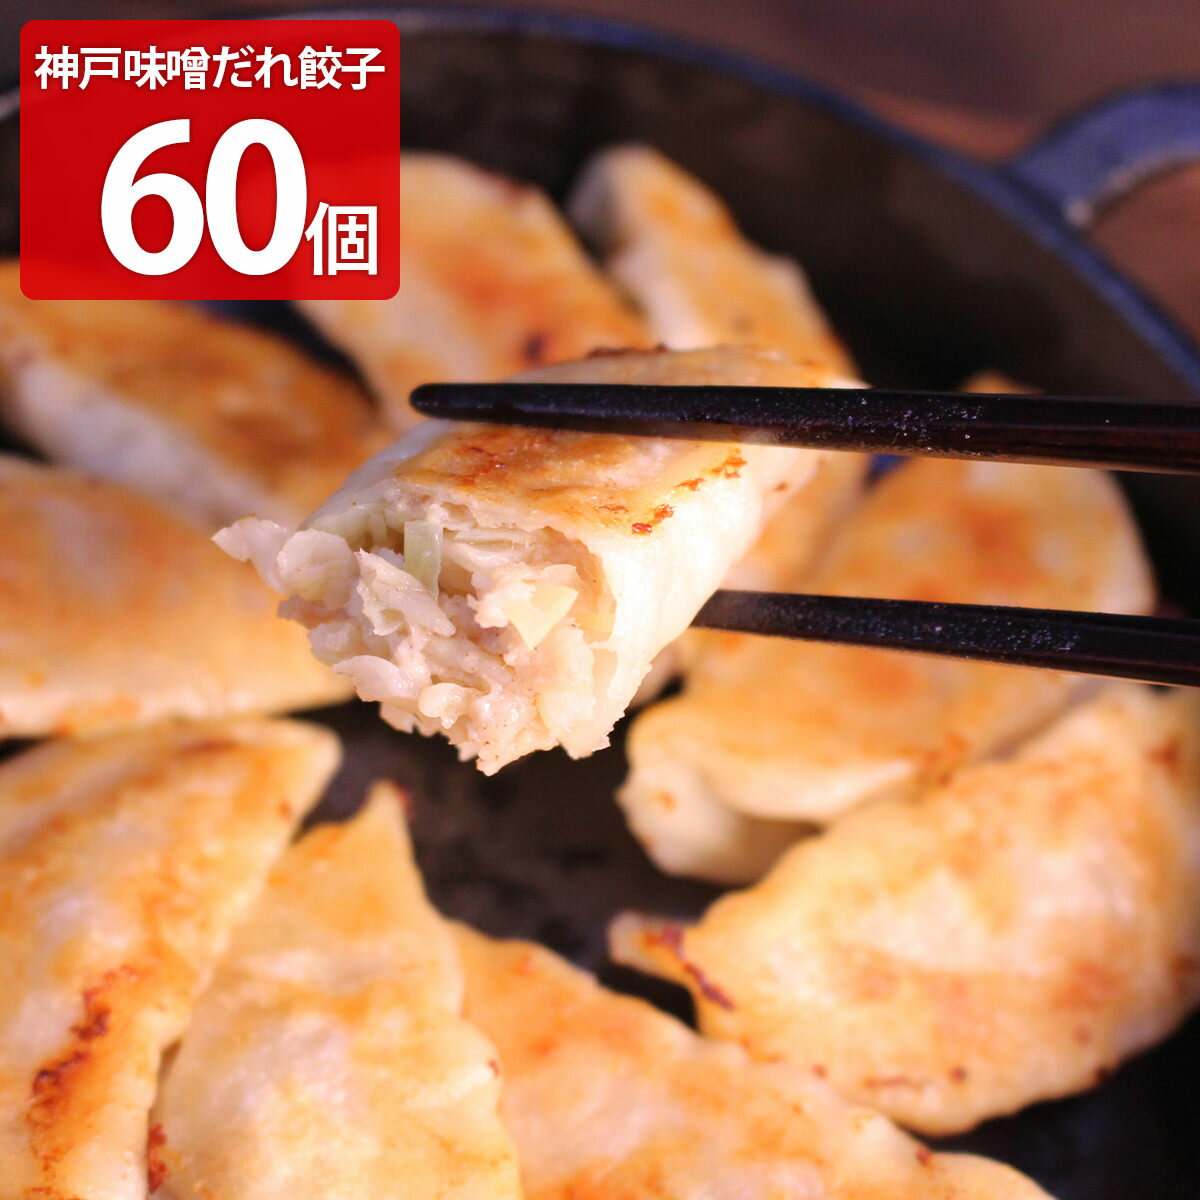 神戸三宮の餃子専門店イチローの定番人気「神戸味噌だれ餃子」は、キャベツのザクザク感と豚肉の旨味と甘みを引き出したあっさり仕立ての餃子です。皮はサクッとしながらもモチモチしています。イチローは神戸三宮にて1996年に創業し、神戸のご当地餃子「神戸味噌だれ餃子」を全国に広めたお店としても有名です。数多くの餃子ランキングで1位を獲得してきました。【名称】ぎょうざ【数量・内容】餃子(16g×30)×2、タレ50ml×2【賞味期間】製造日から180日【原材料】餃子(キャベツ(国産)、皮(小麦粉(国内製造)、でん粉、食塩)、豚肉(国産)、ラード、生姜、醤油、食用ごま油、にんにく、発酵調味料、砂糖、食塩、胡椒/調味料(アミノ酸等)、酸化防止剤(ミックストコフェロール)、シリコーン、酒精、加工デンプン、(一部に小麦・大豆・豚肉・ごまを含む))、タレ(味噌(国内製造)、醤油、醸造酢、砂糖、ラー油、かつおエキス/調味料(アミノ酸等)、(一部に小麦・大豆・ごまを含む))【仕様】掲載商品には、アレルギーの原因といわれる原材料を含んでいる場合がございます。 くわしくはお問い合わせフォームにてご連絡ください。類似商品はこちら神戸味噌だれ餃子 20個 惣菜 冷凍 餃子 お2,288円神戸ポークプレミアム味噌だれ餃子 惣菜 餃子 2,525円神戸味噌だれ餃子 2種詰め合わせ 惣菜 餃子 3,735円神戸味噌だれ餃子 3種詰め合わせ 惣菜 餃子 3,454円神戸味噌だれ餃子と焼売＆水餃子食べ比べセット 4,869円特製しょうが餃子 60個 惣菜 冷凍 餃子 お3,735円特製しょうが餃子 20個 惣菜 冷凍 餃子 お2,288円神戸味噌だれ餃子＆餃子カツセット 惣菜 餃子 3,713円神戸味噌だれ餃子とハンバーグ＆餃子カツセット 5,517円新着商品はこちら2024/5/16かね七 富山湾産白えびピクルス詰合せ※北海道・4,062円2024/5/16岩手 けせんの海※北海道・沖縄・離島 お届け不5,346円2024/5/16徳島クルス※北海道・沖縄・離島 お届け不可5,346円再販商品はこちら2024/5/16富錦樹 フージンツリー 人気メニュー食べ比べセ10,900円2024/5/16石川のひとくち玄米チップス サクザク 25g×3,368円2024/5/16屋久島そだちのフルーツゼリー シャリプニ 853,719円